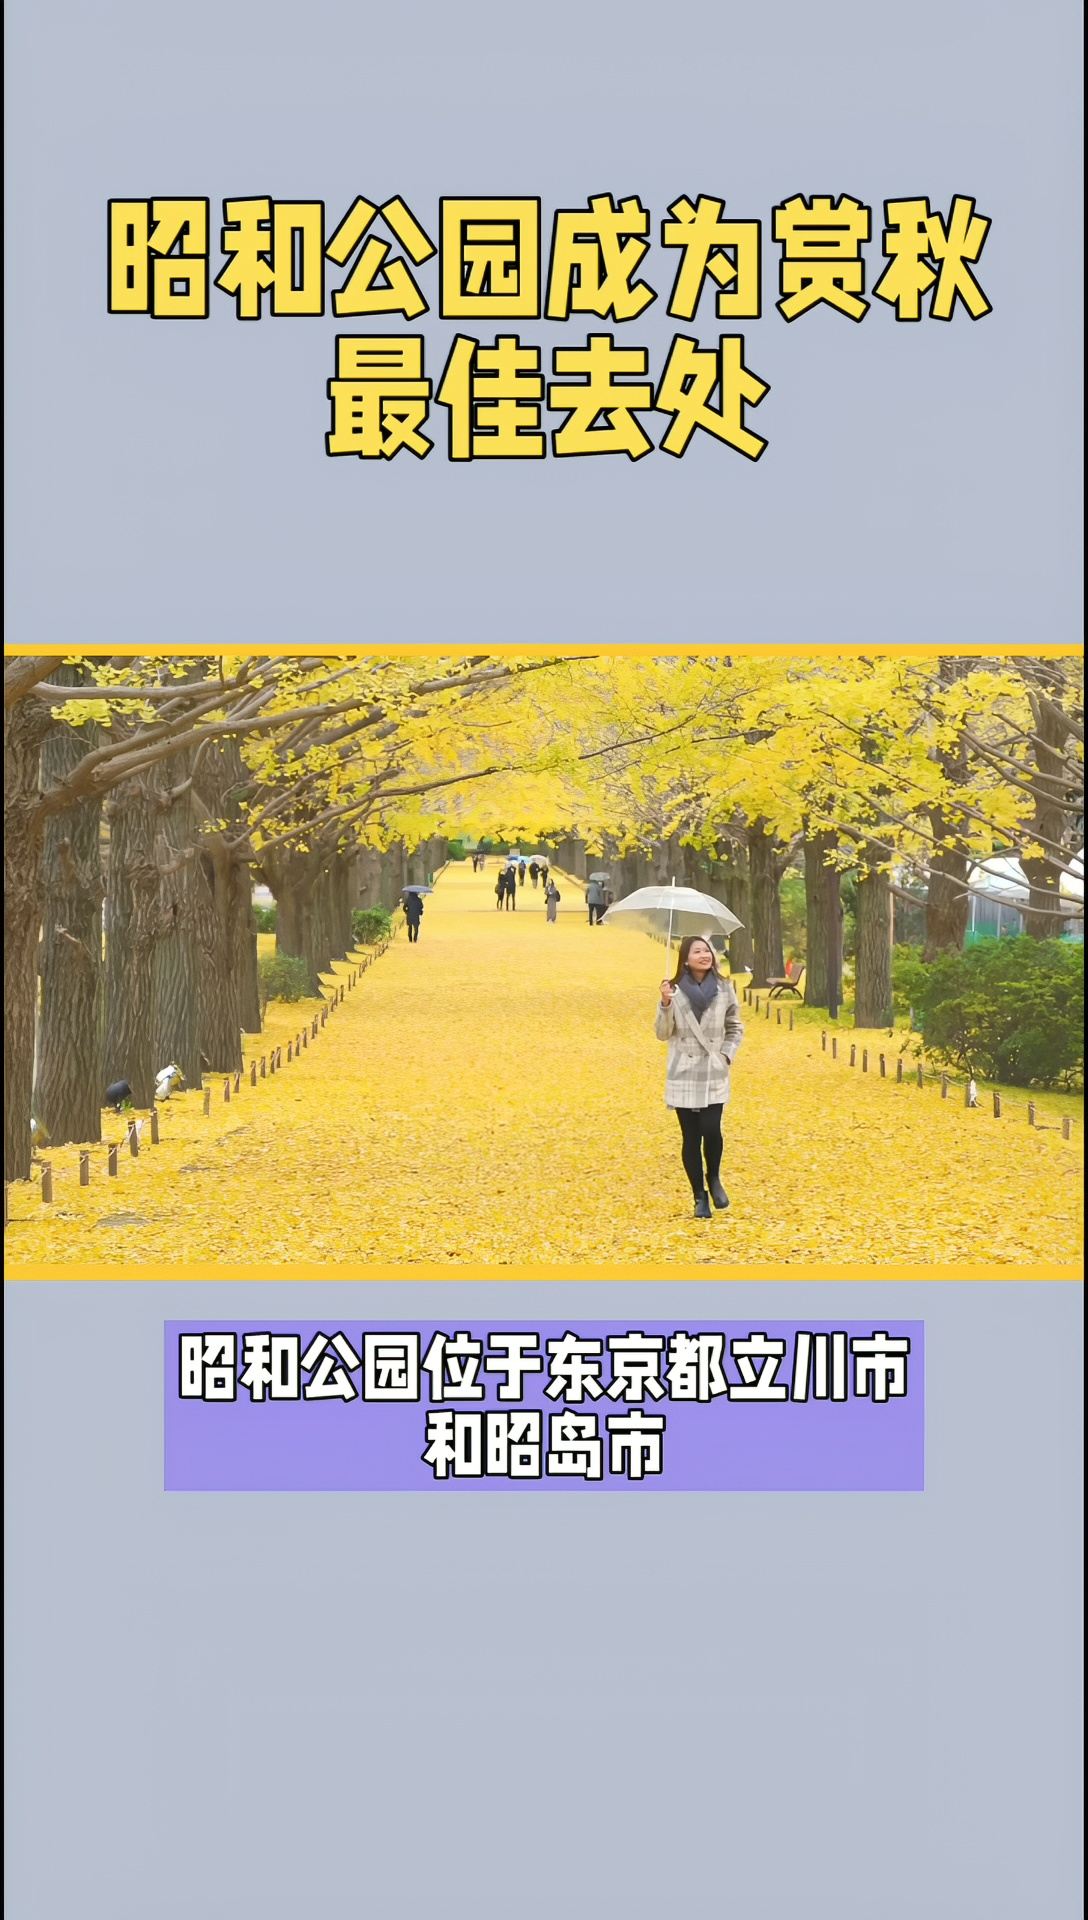 #昭和公园红叶·黄叶祭11/3开启 #昭和纪念公园游玩攻略 #昭和公园游玩